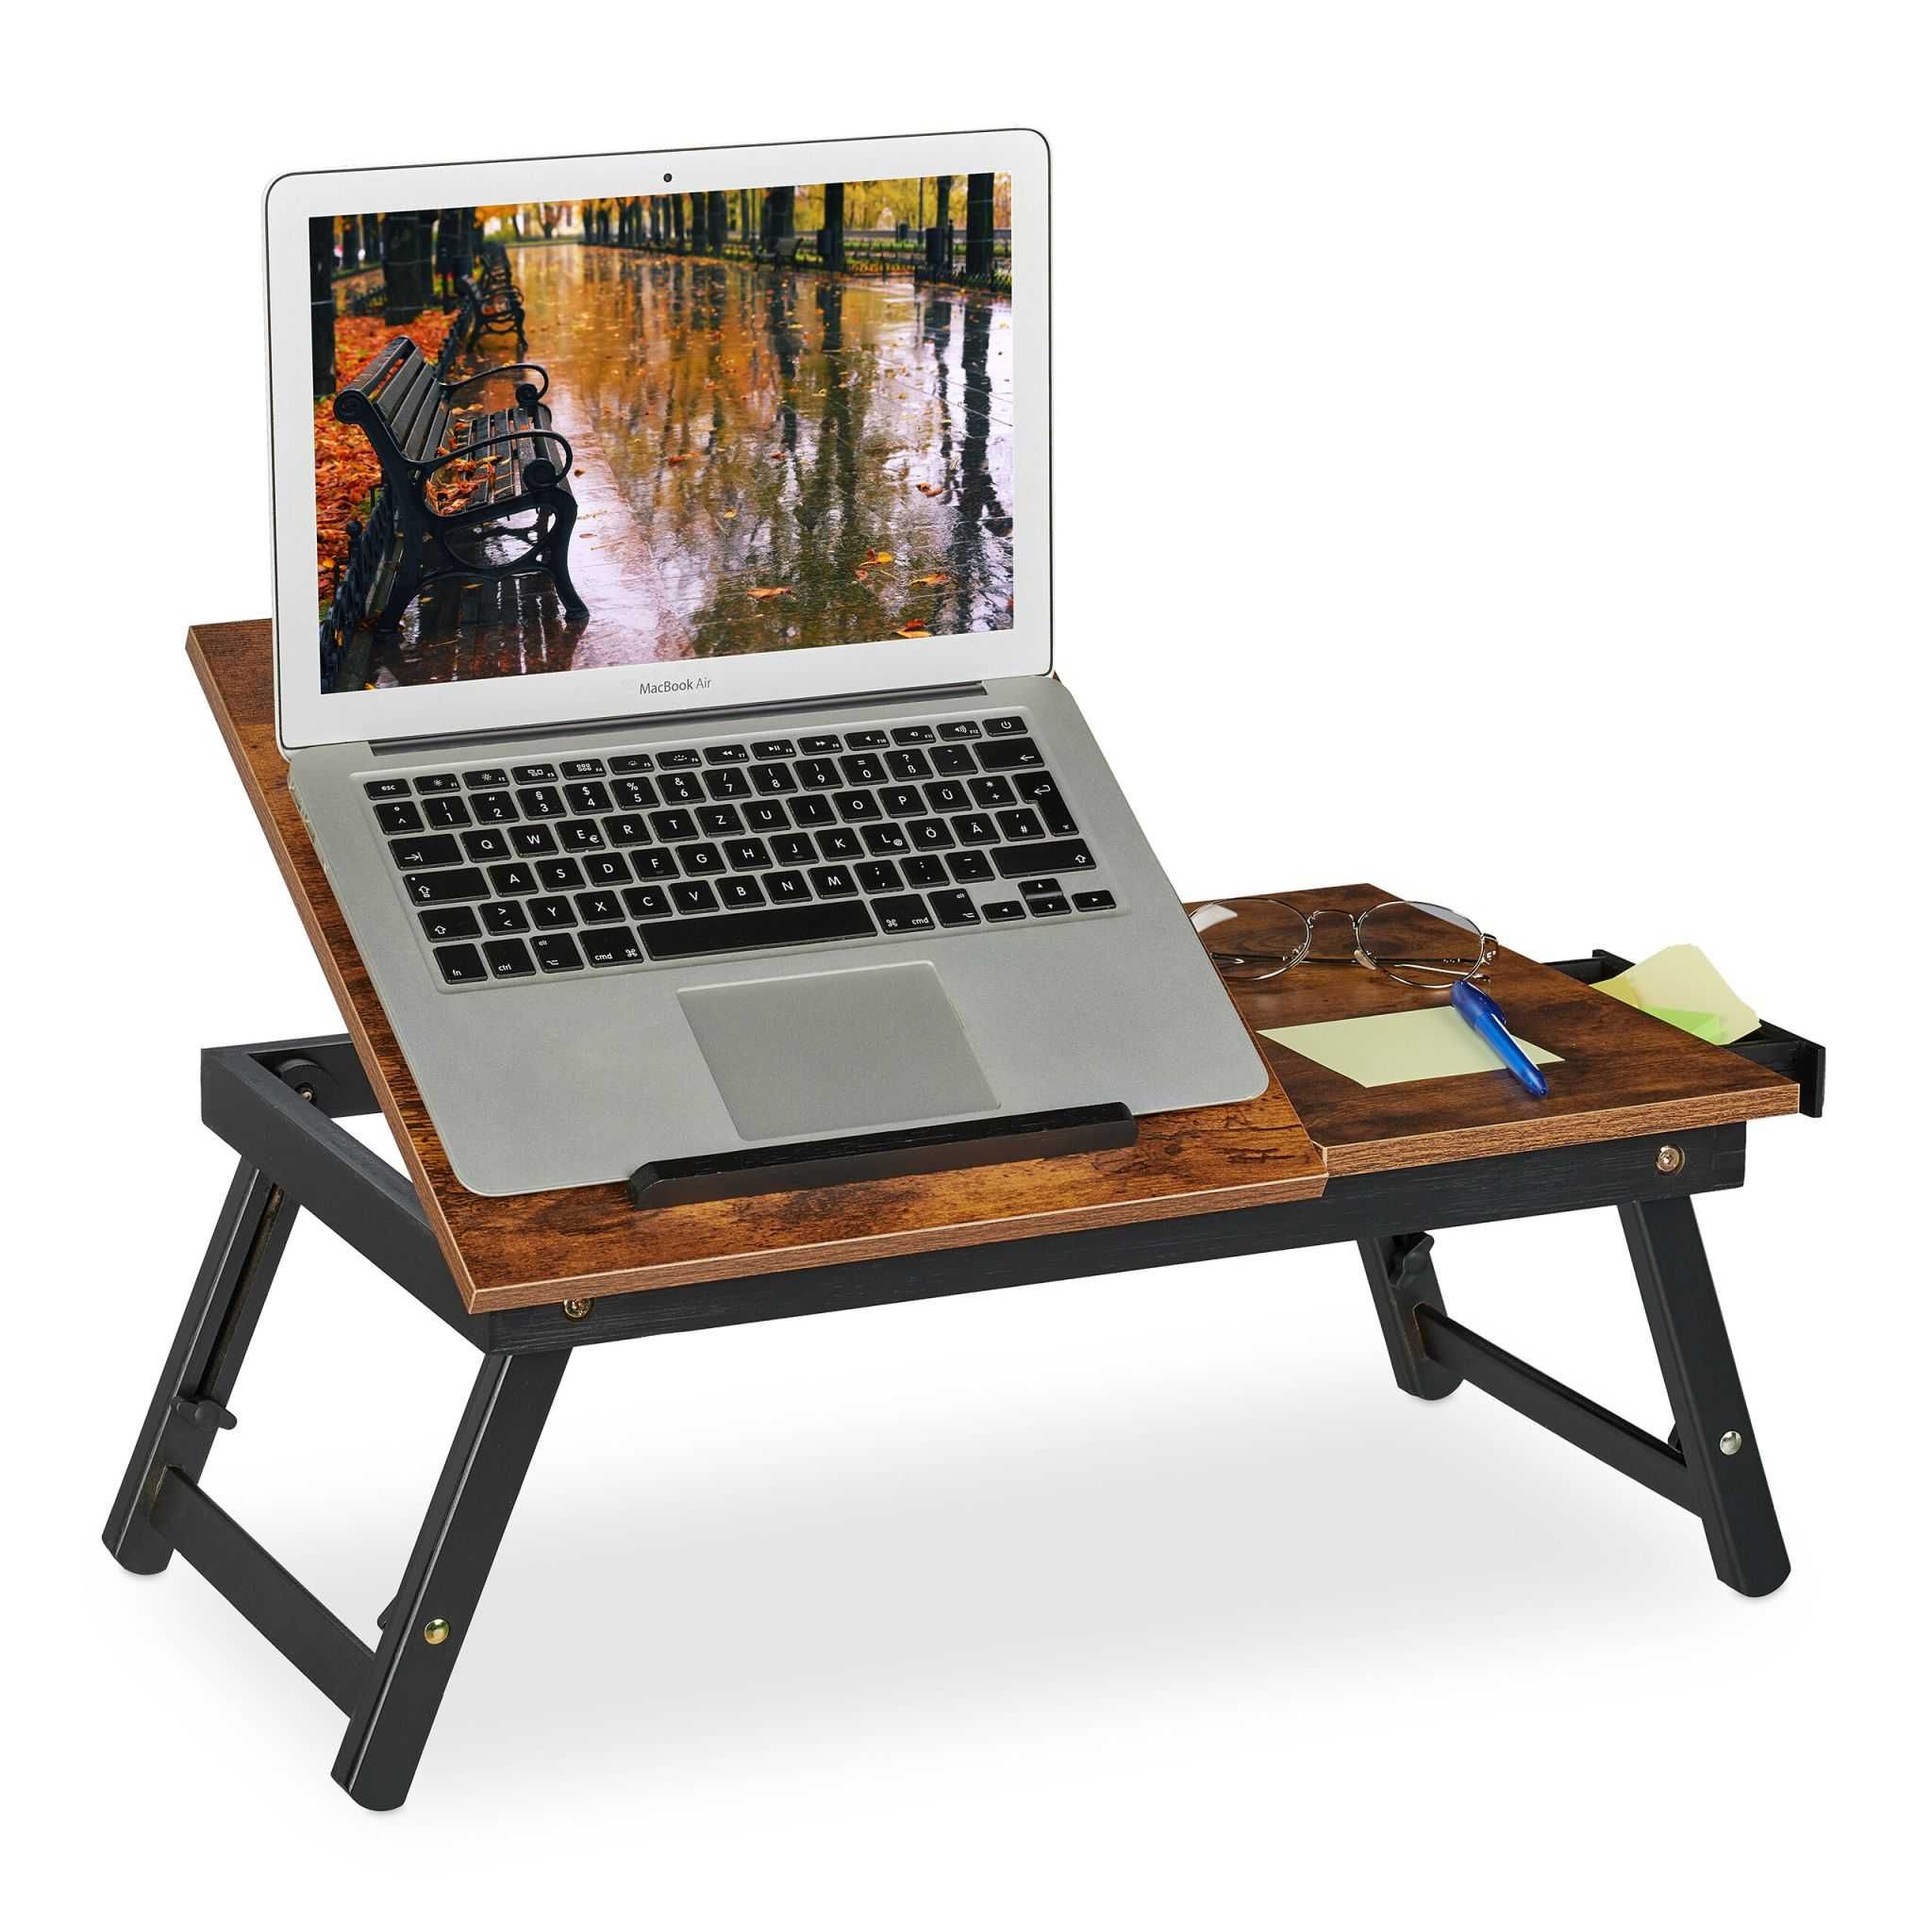 Masa pentru laptop din bambus pliabila reglabila cu sertar 32x69x35 cm